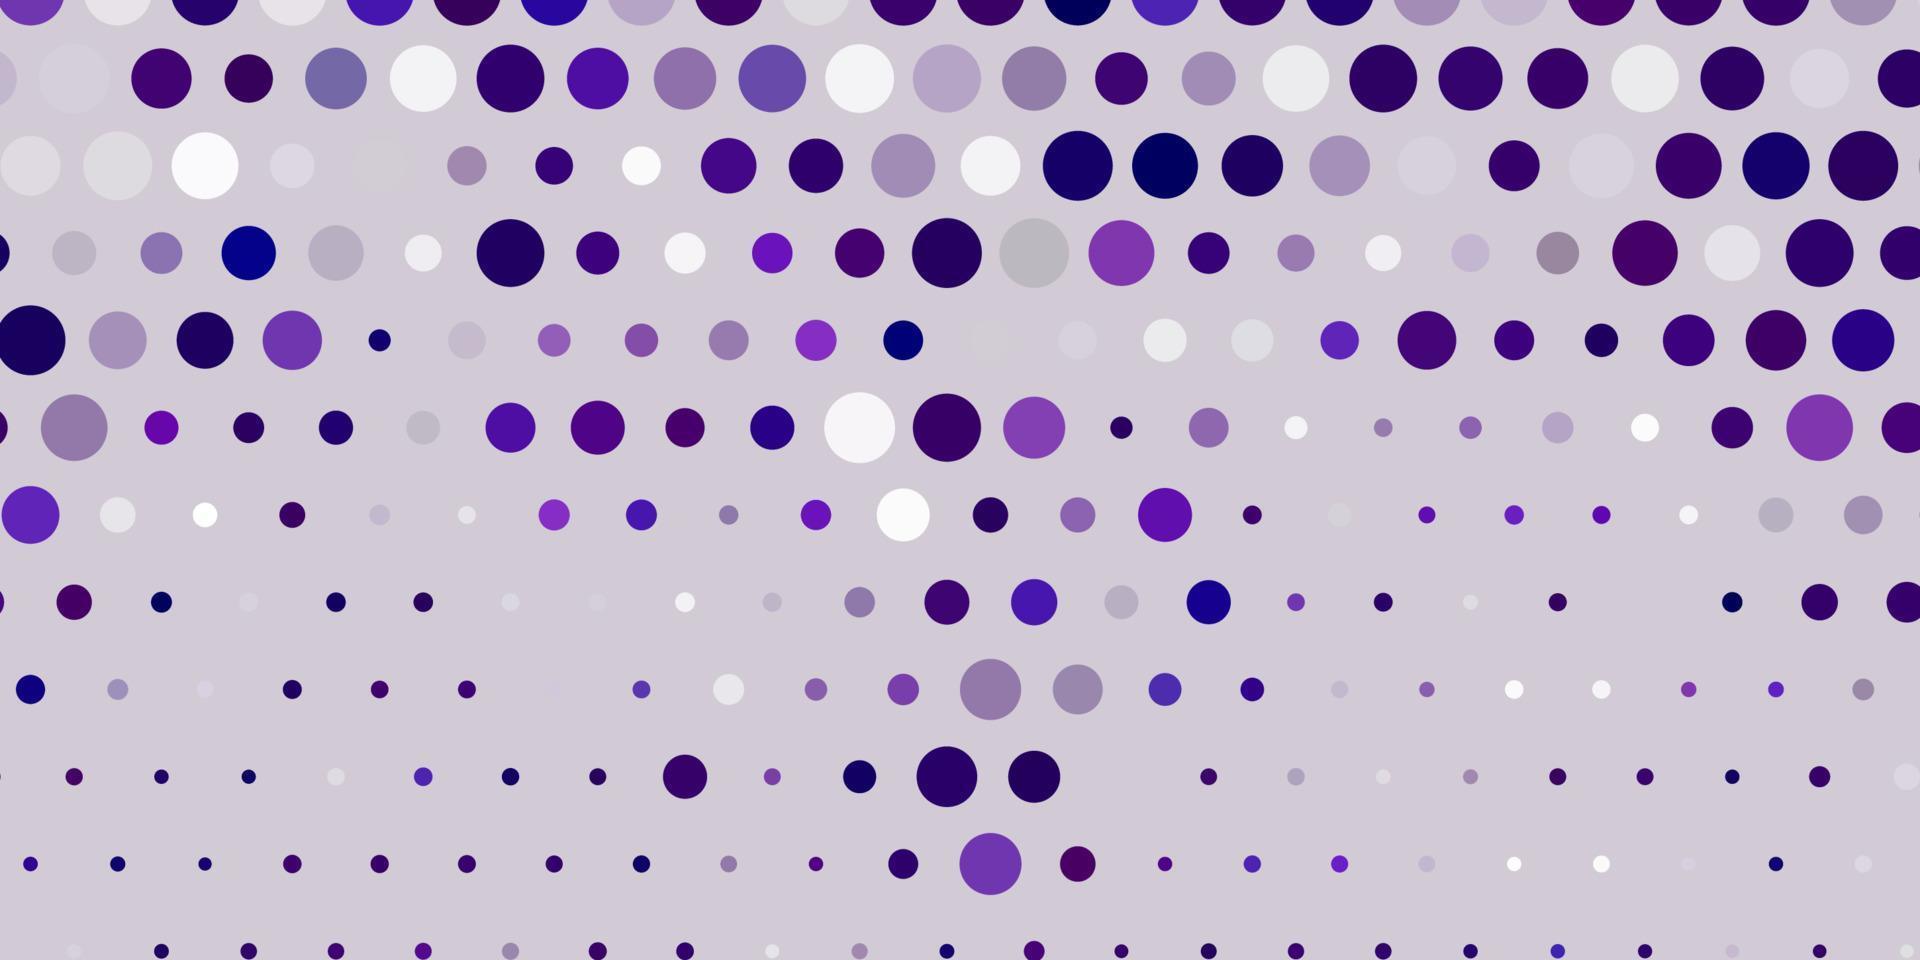 diseño vectorial de color púrpura claro con formas circulares. vector